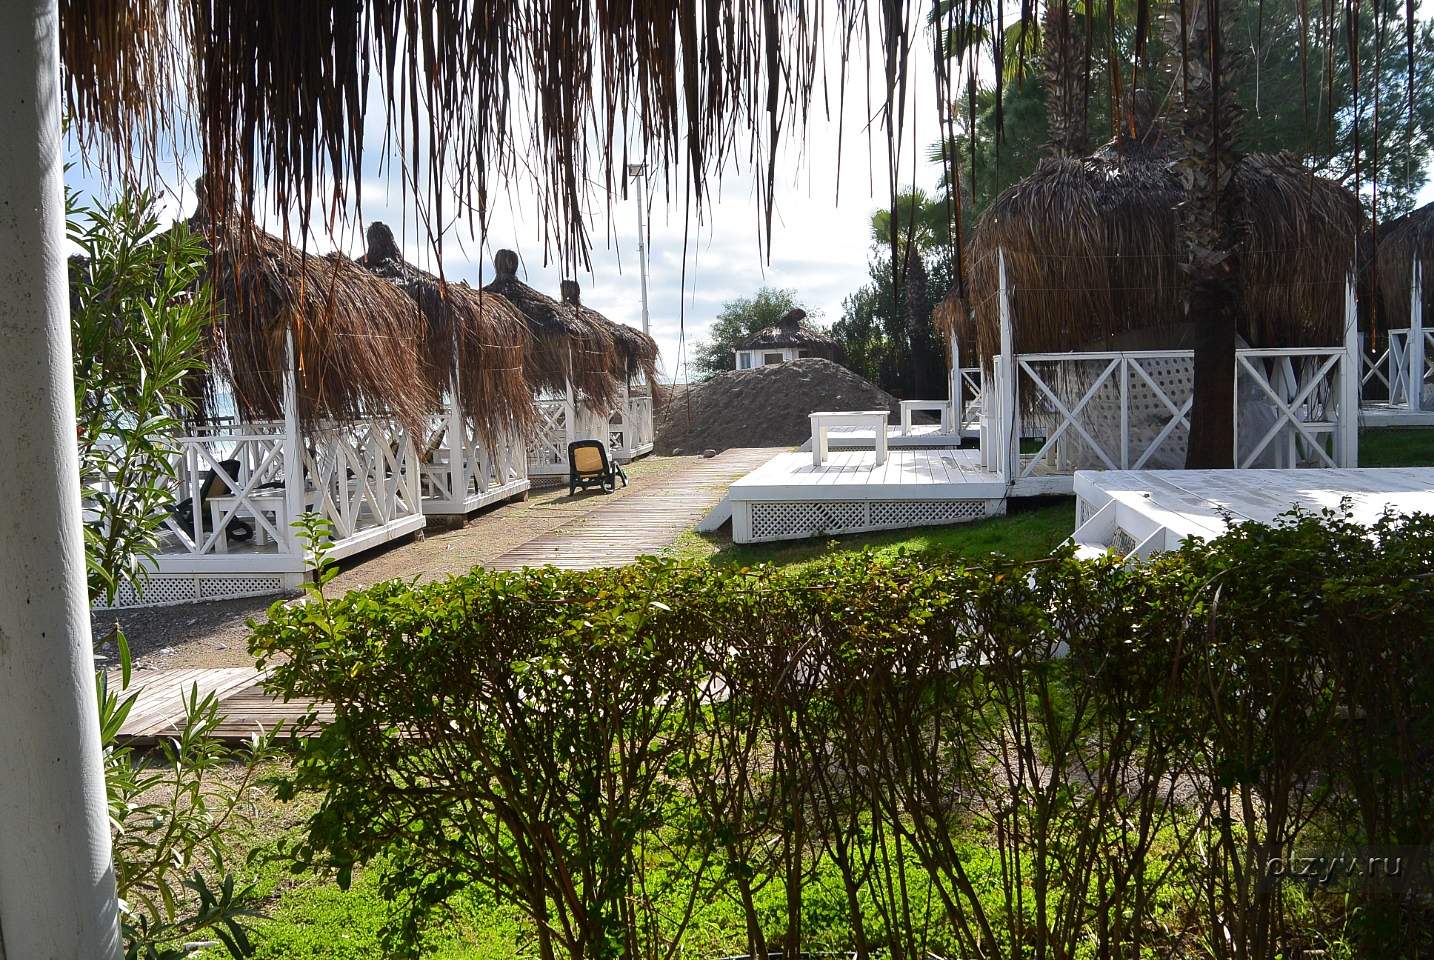 Paloma Foresta Resort